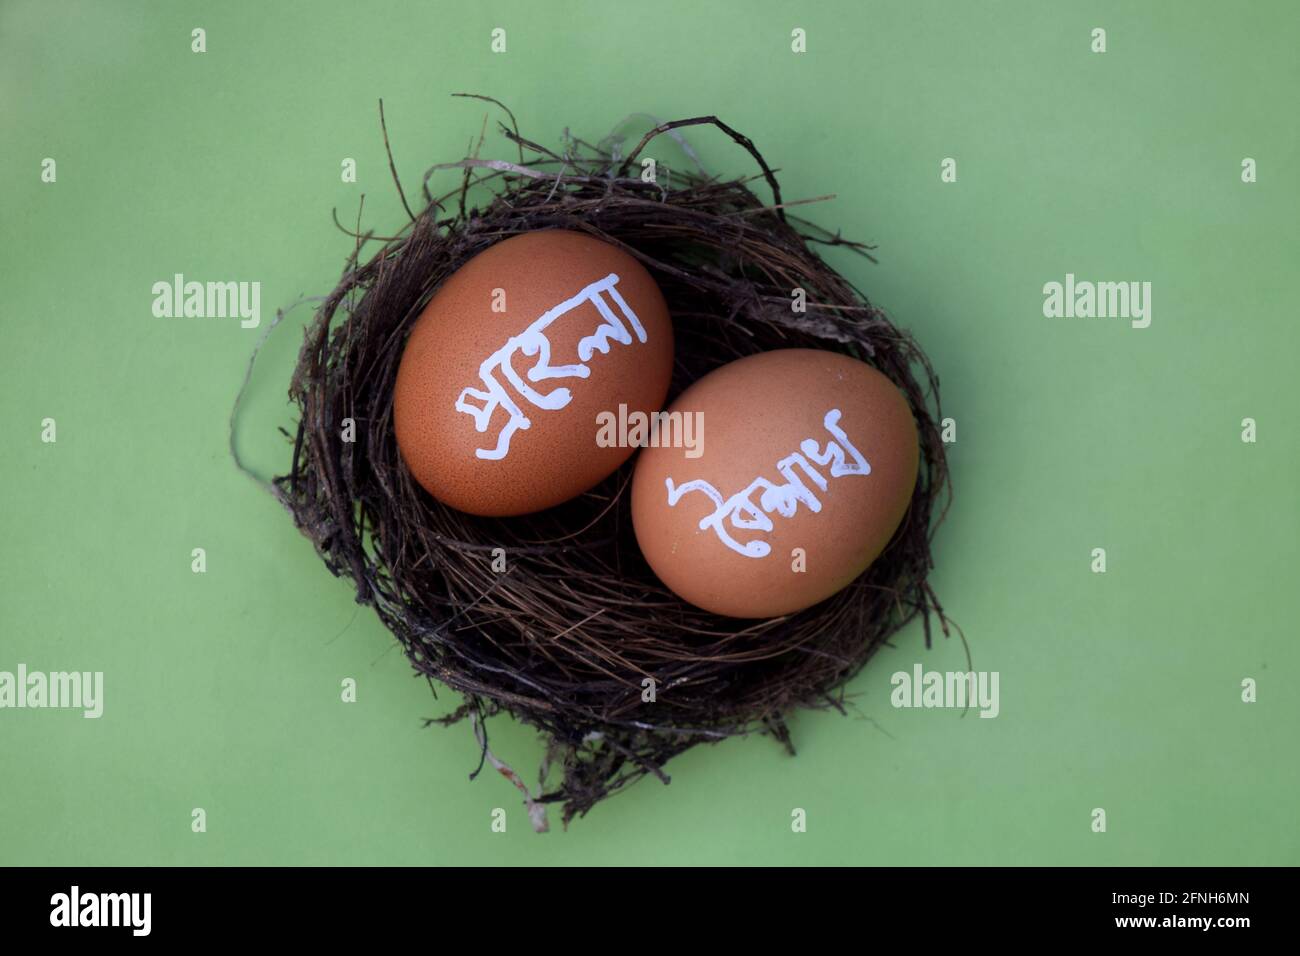 Pohela boishakh on egg. Pohela boishakh means Bengali New Year. Bengali translated character Stock Photo